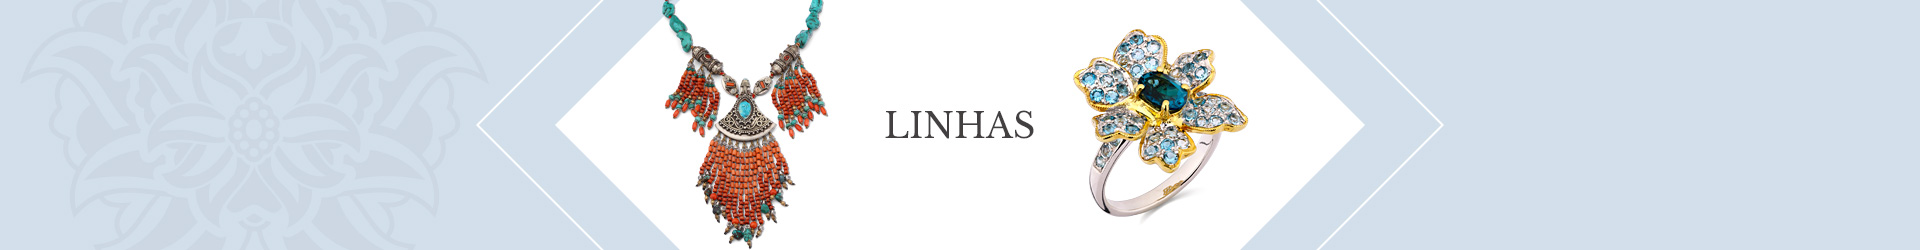 Banner Linhas